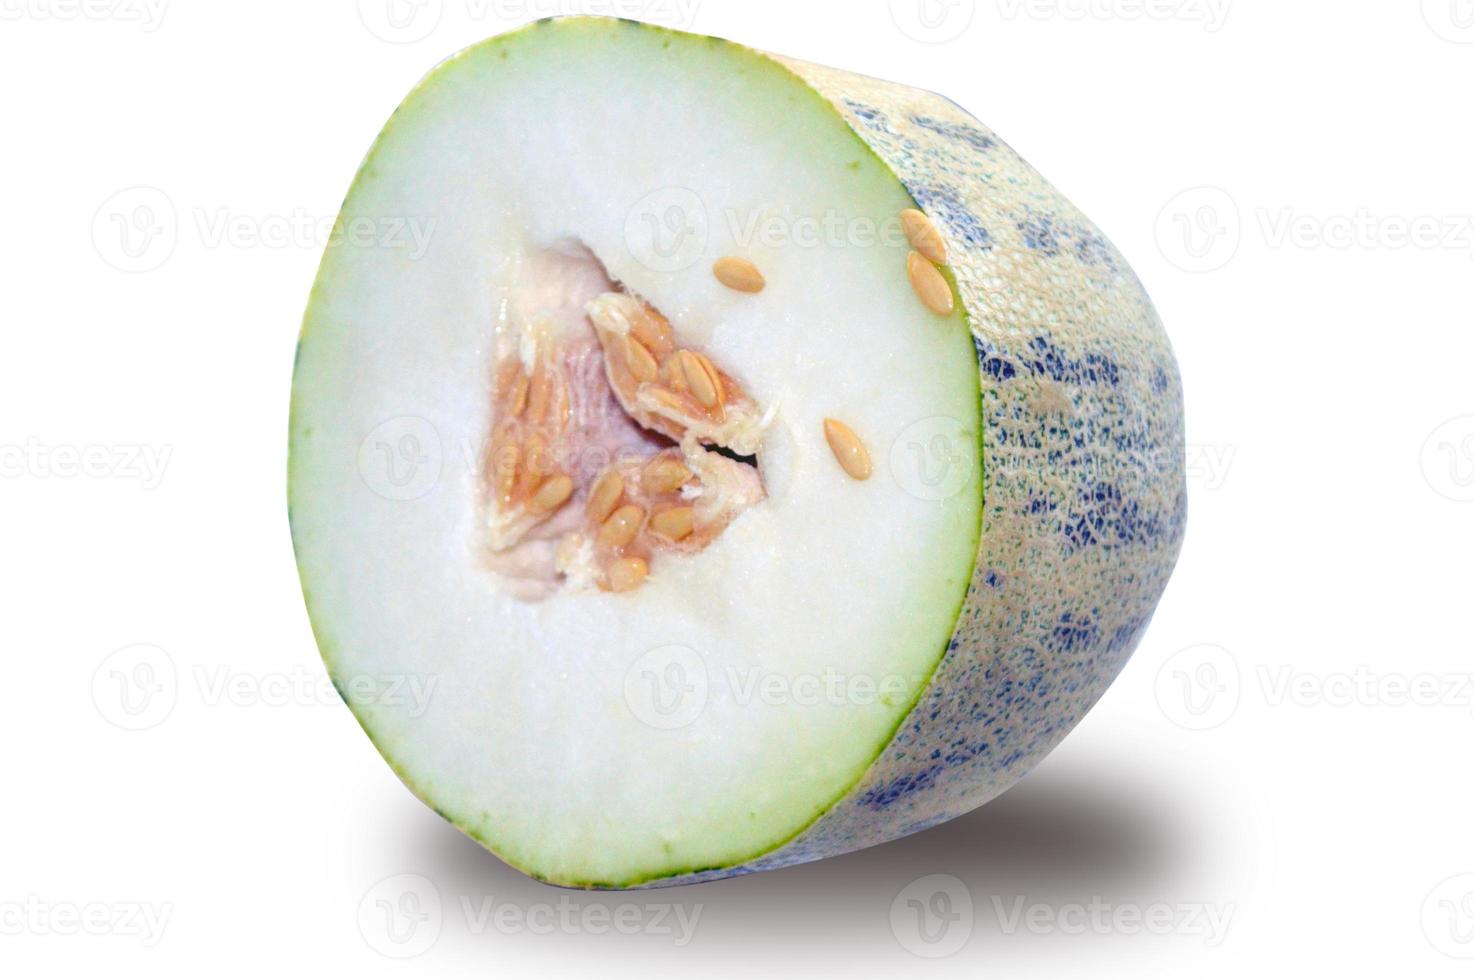 halb geschnittene Melone mit Körnern foto